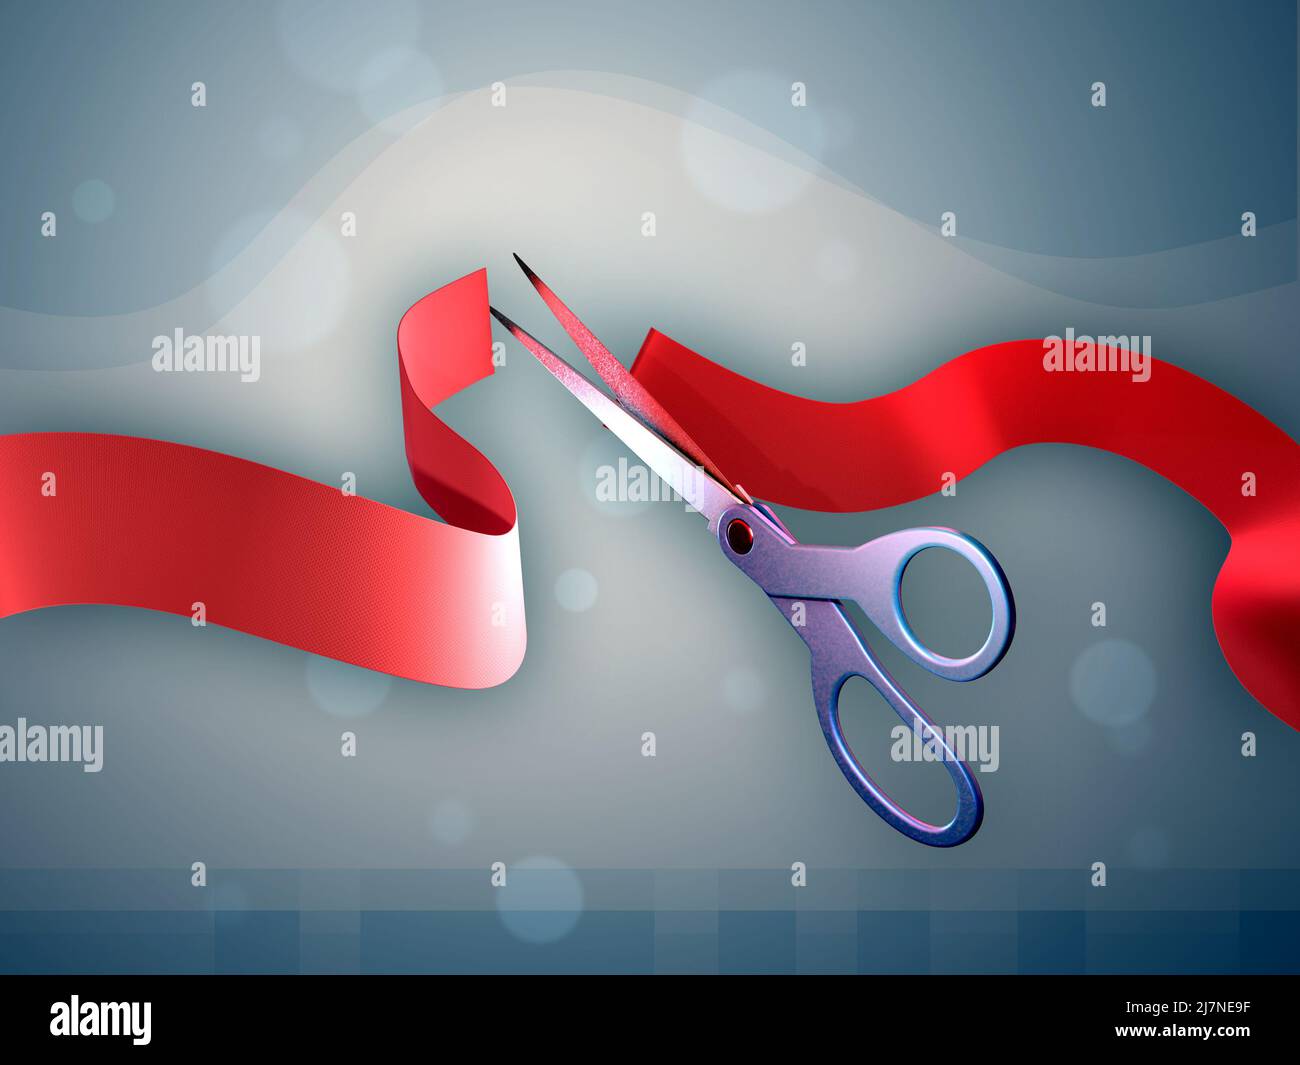 Tijeras cortando una cinta roja para una ceremonia de inauguración. Ilustración digital. Foto de stock